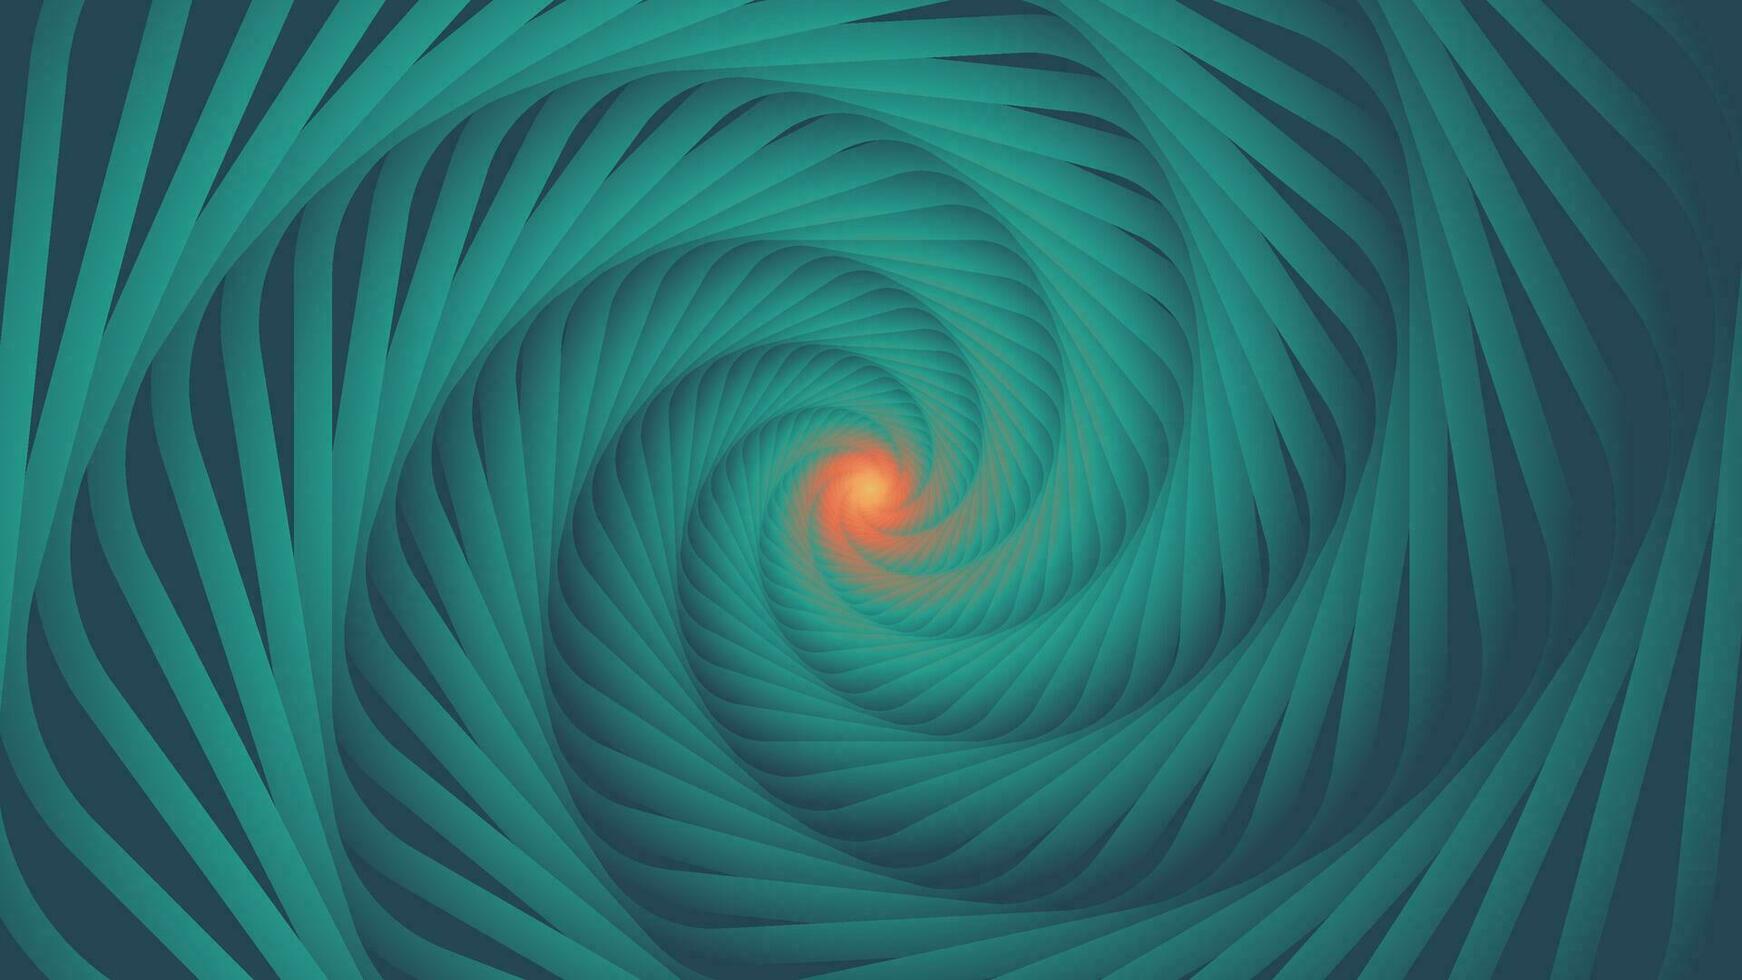 Abstract spiral spinning vortex flower background. vector